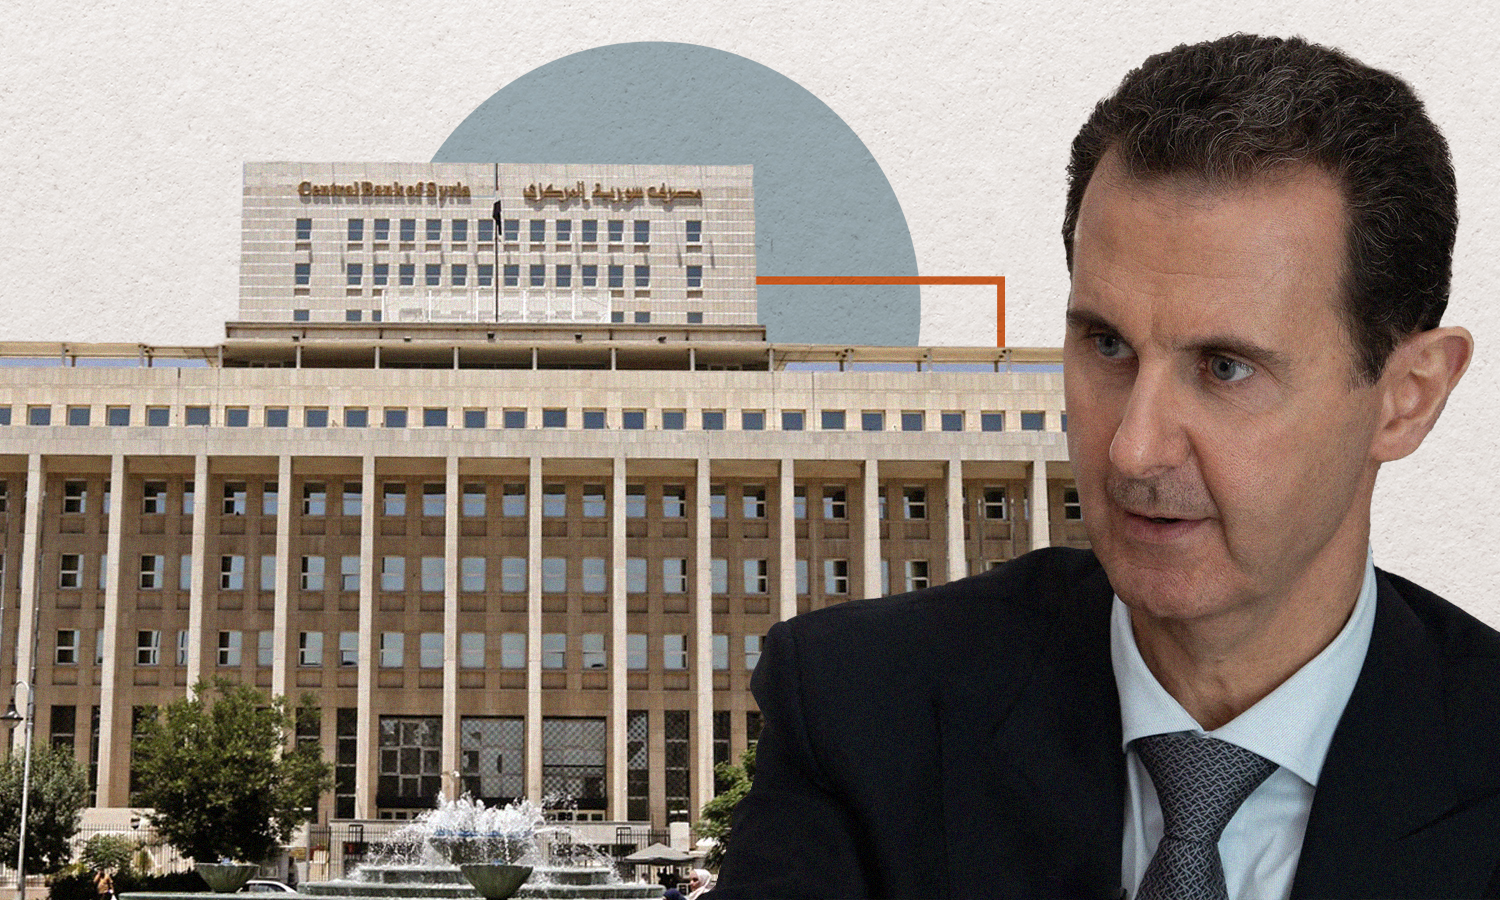 Head of the Syrian regime, Bashar al-Assad, and Central Bank of Syria (edited by Enab Baladi)